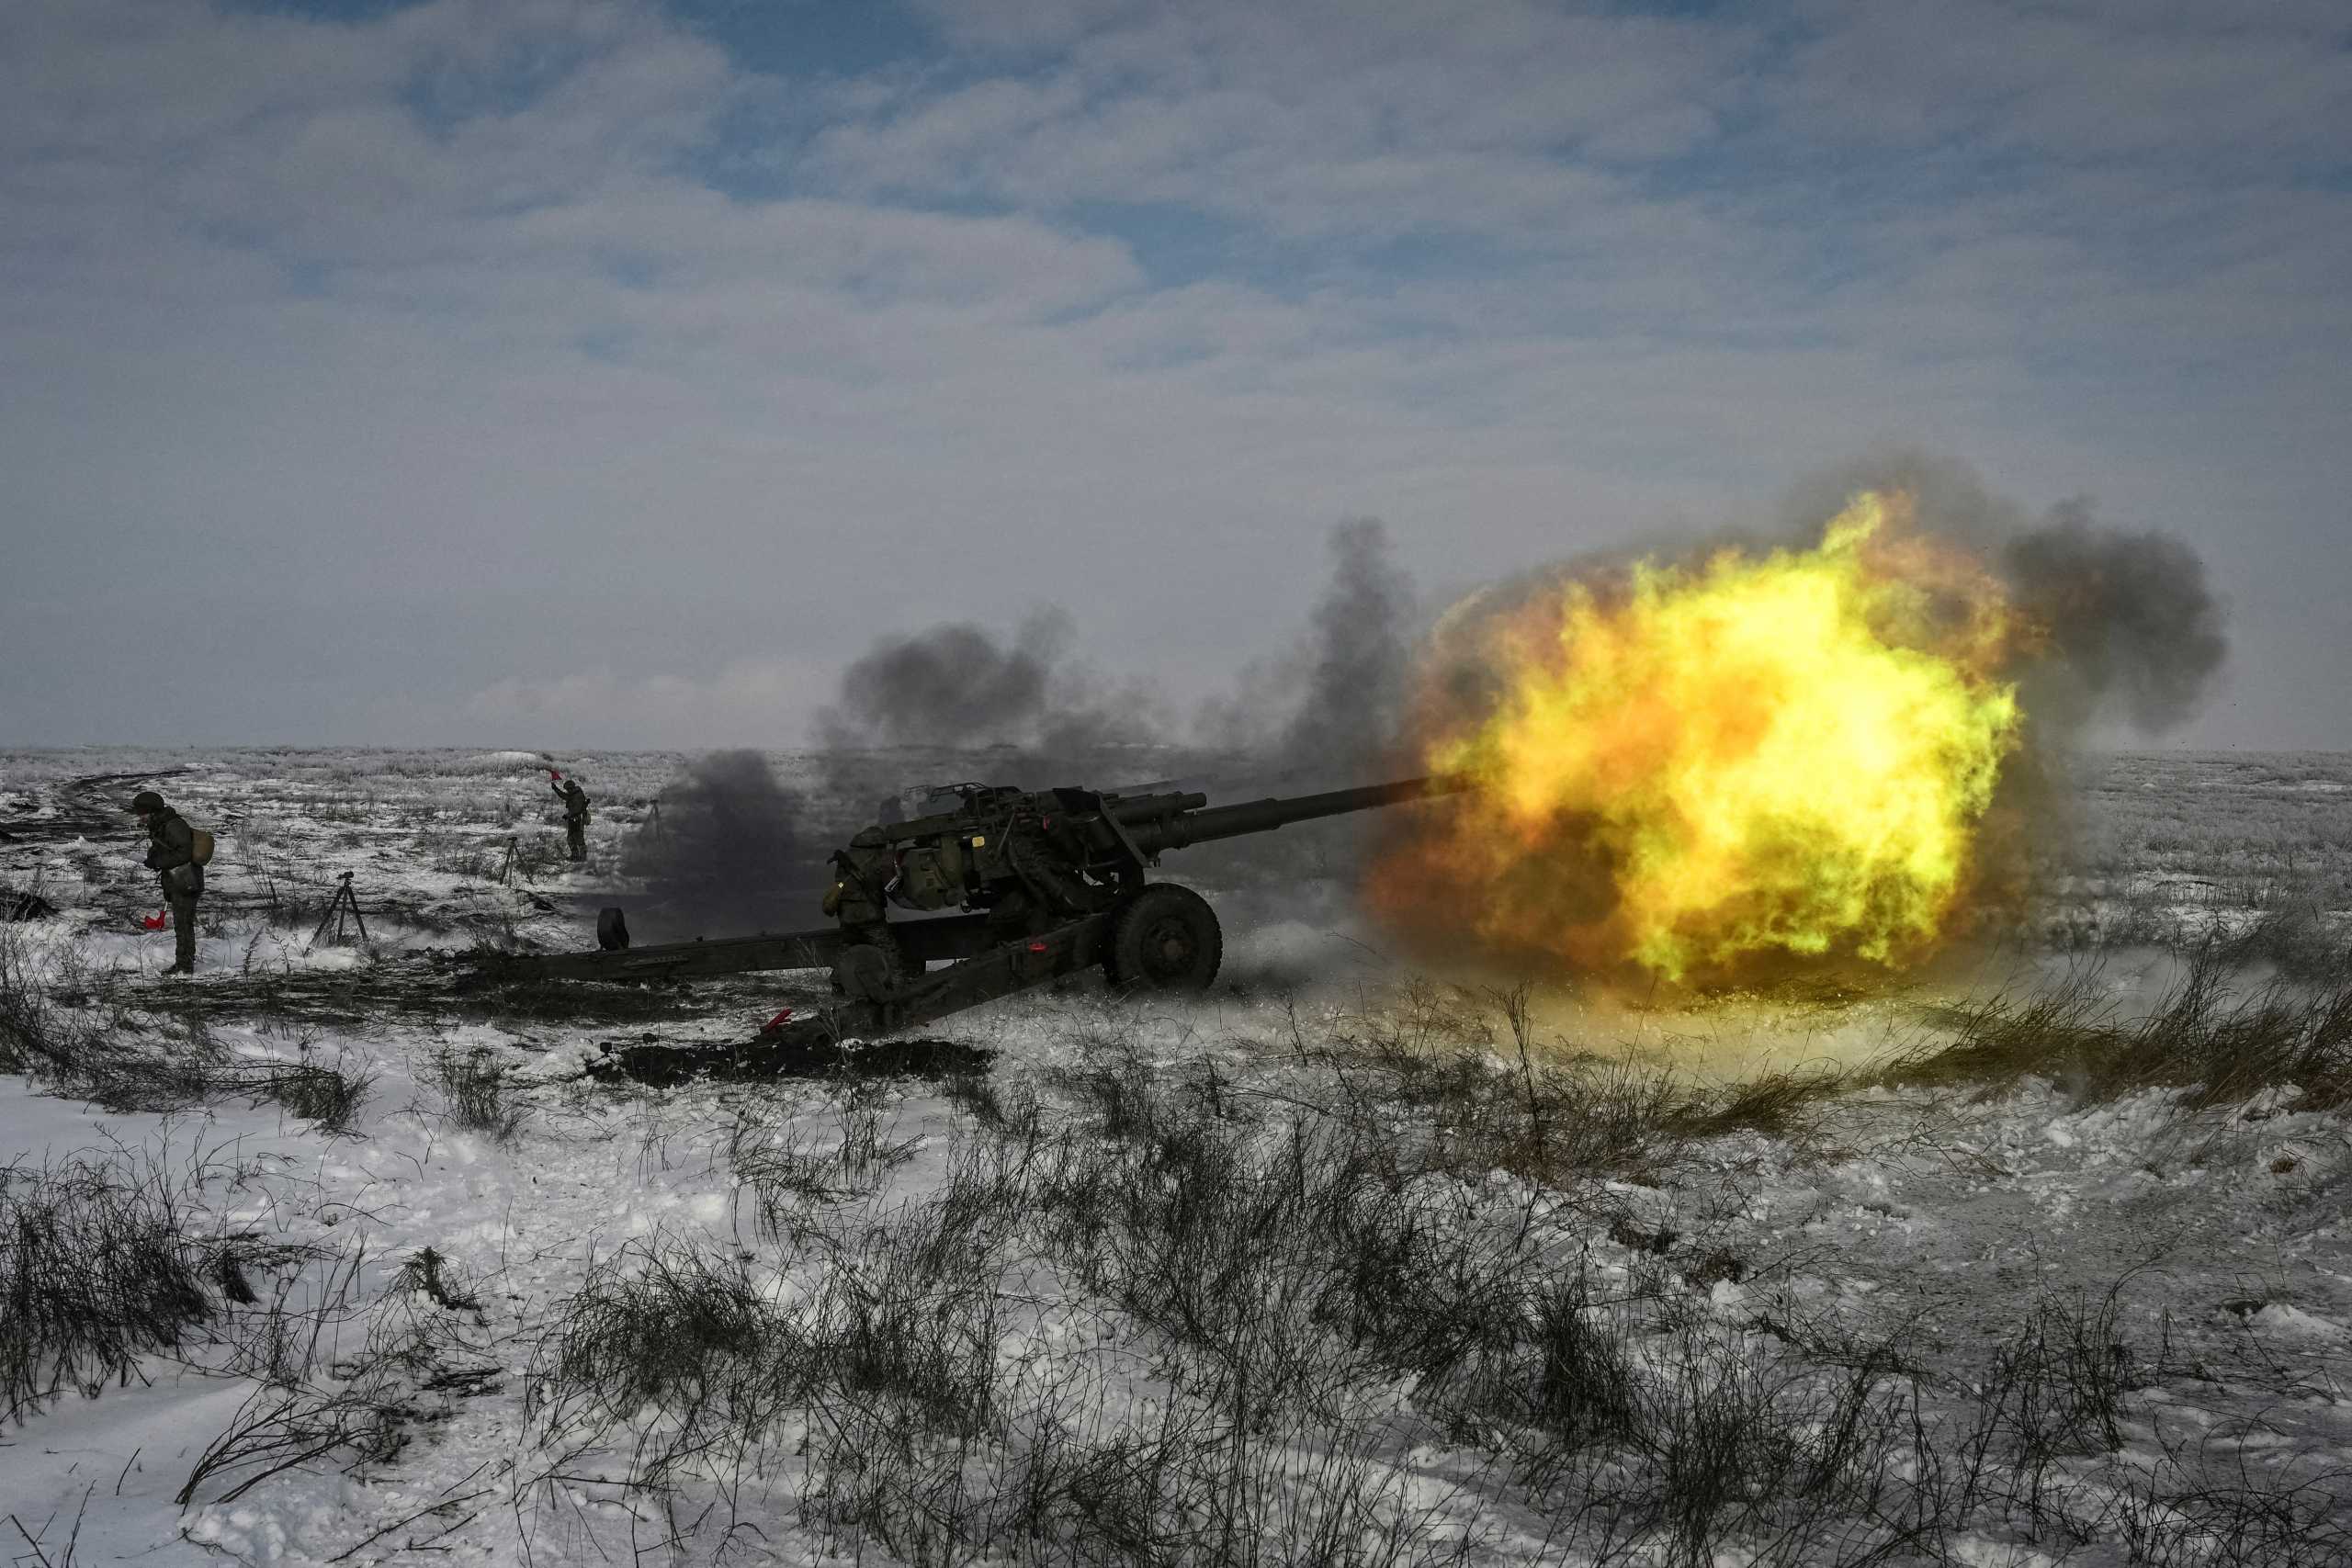 Ουκρανία: Η Ρωσία ανακοίνωσε νέα απόσυρση στρατευμάτων – Η Δύση παραμένει επιφυλακτική